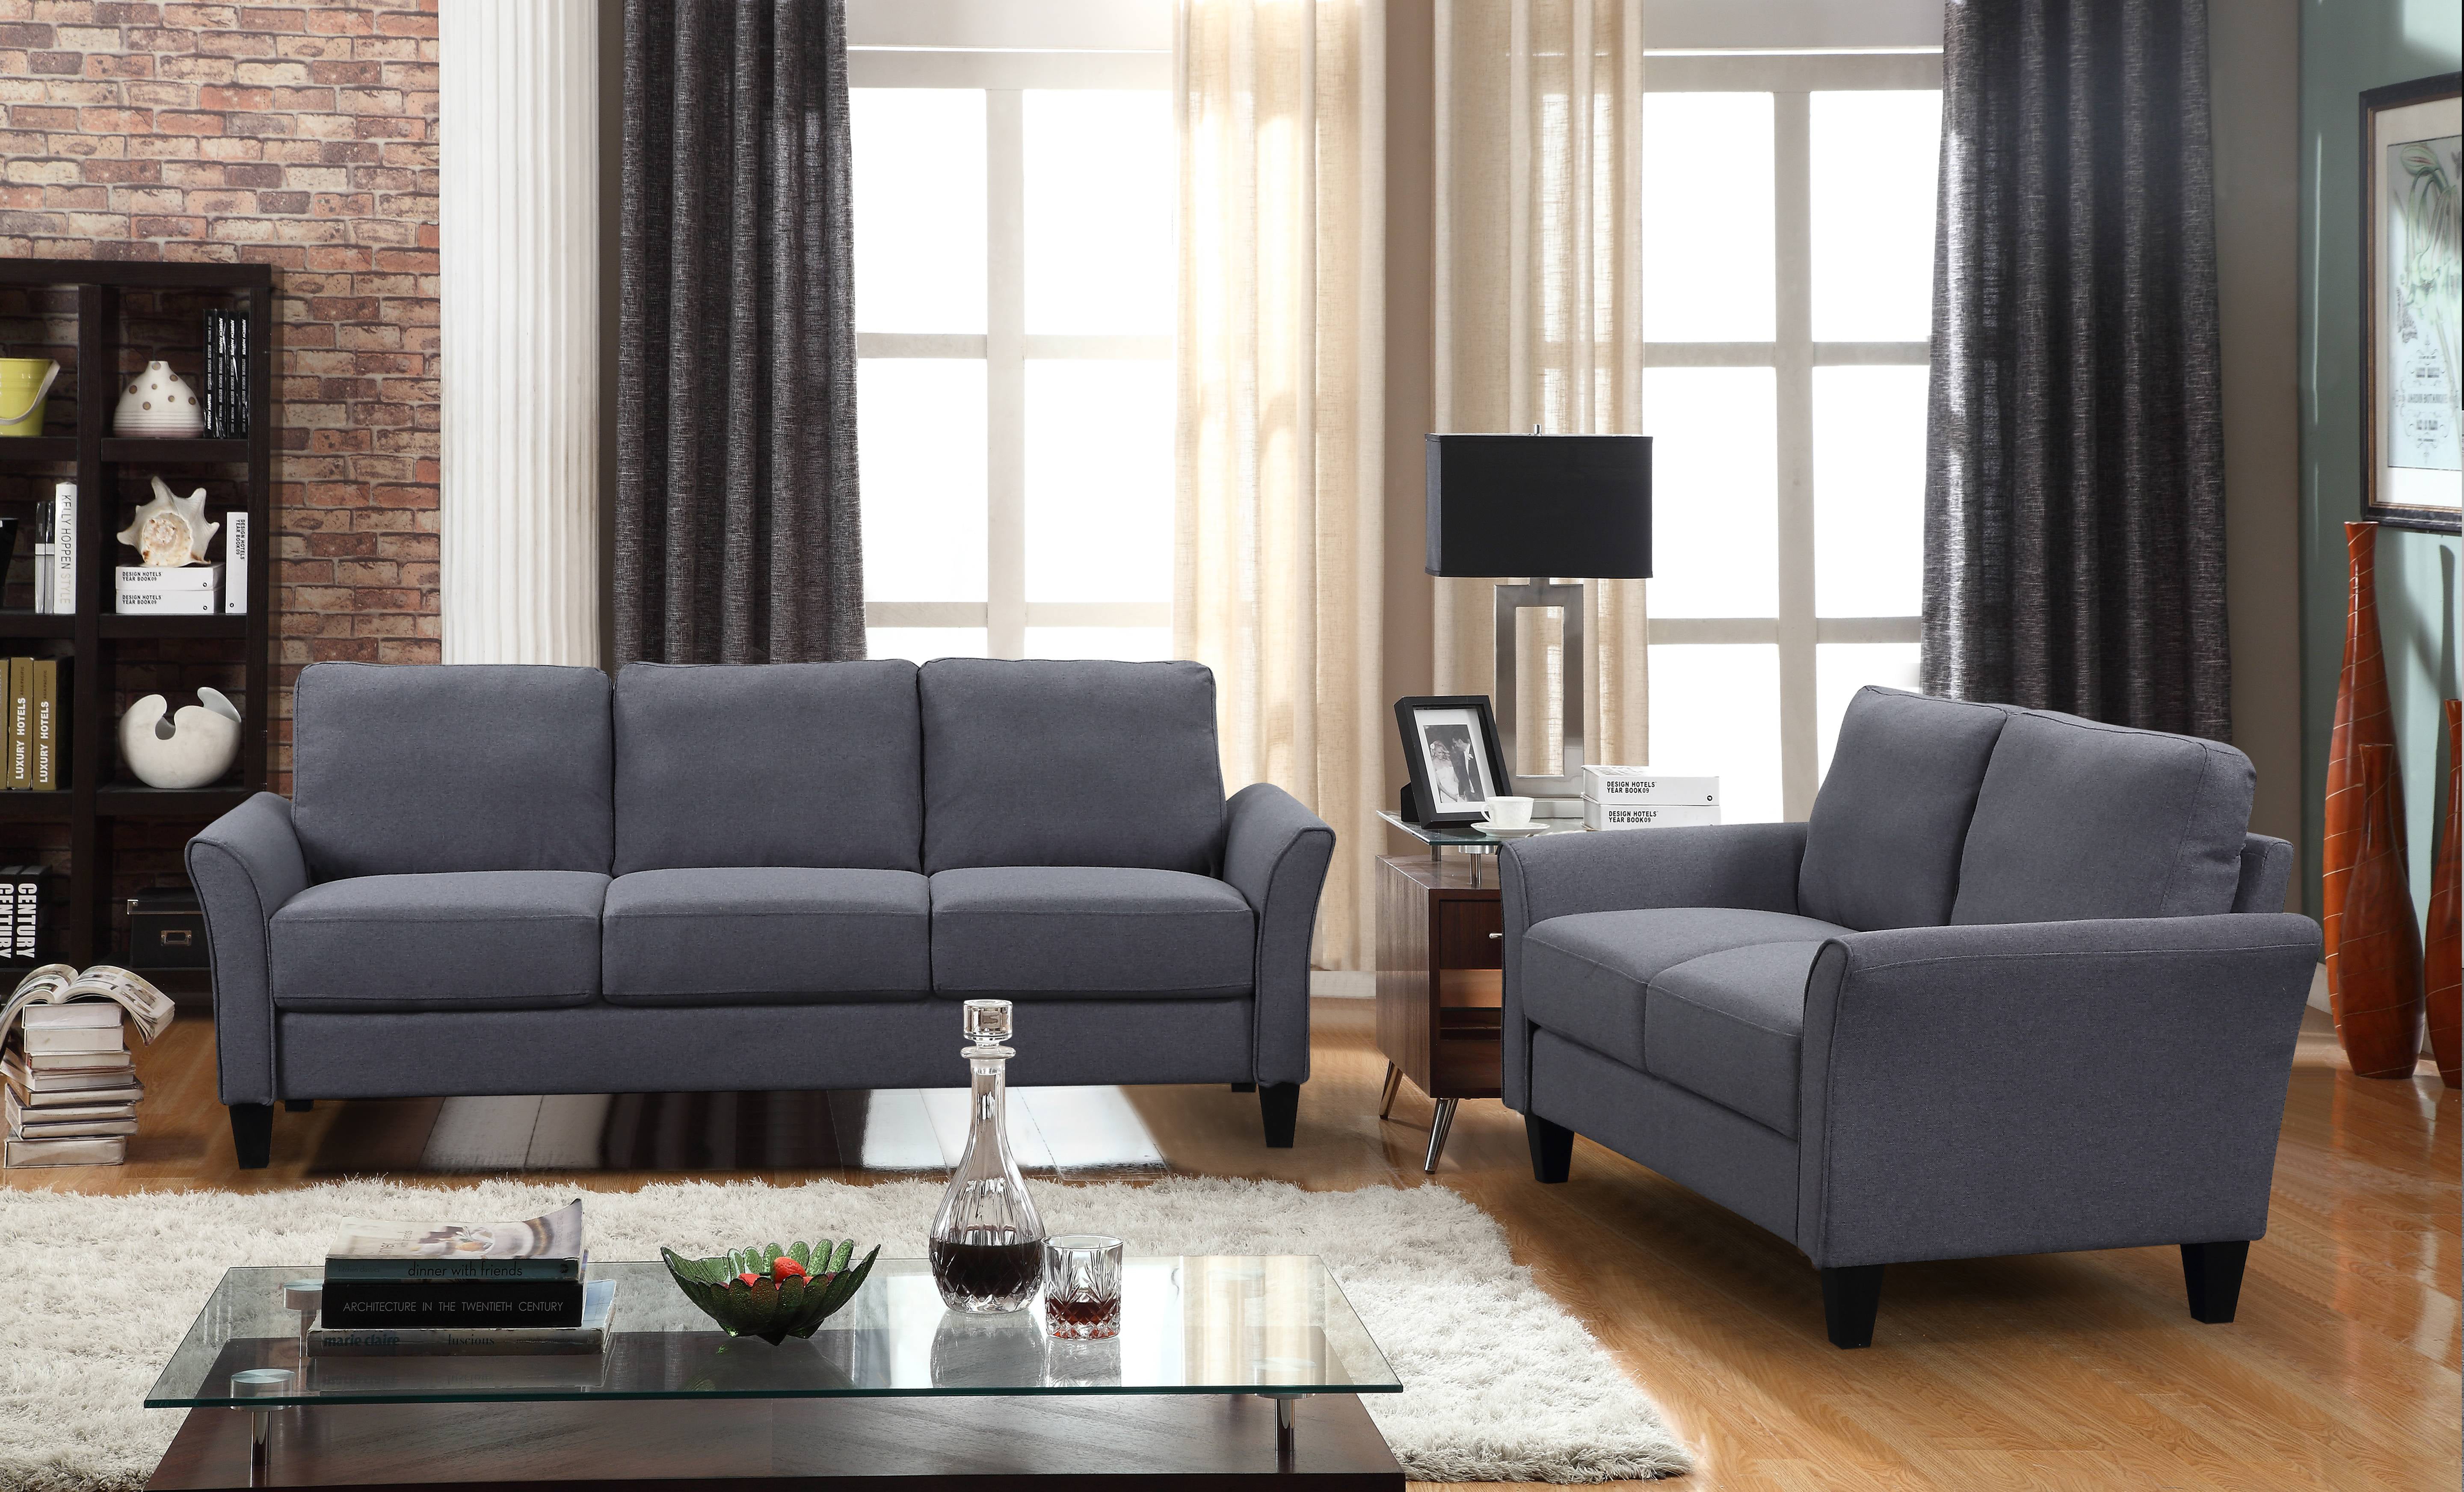 Best Sofa Sets For Living Room